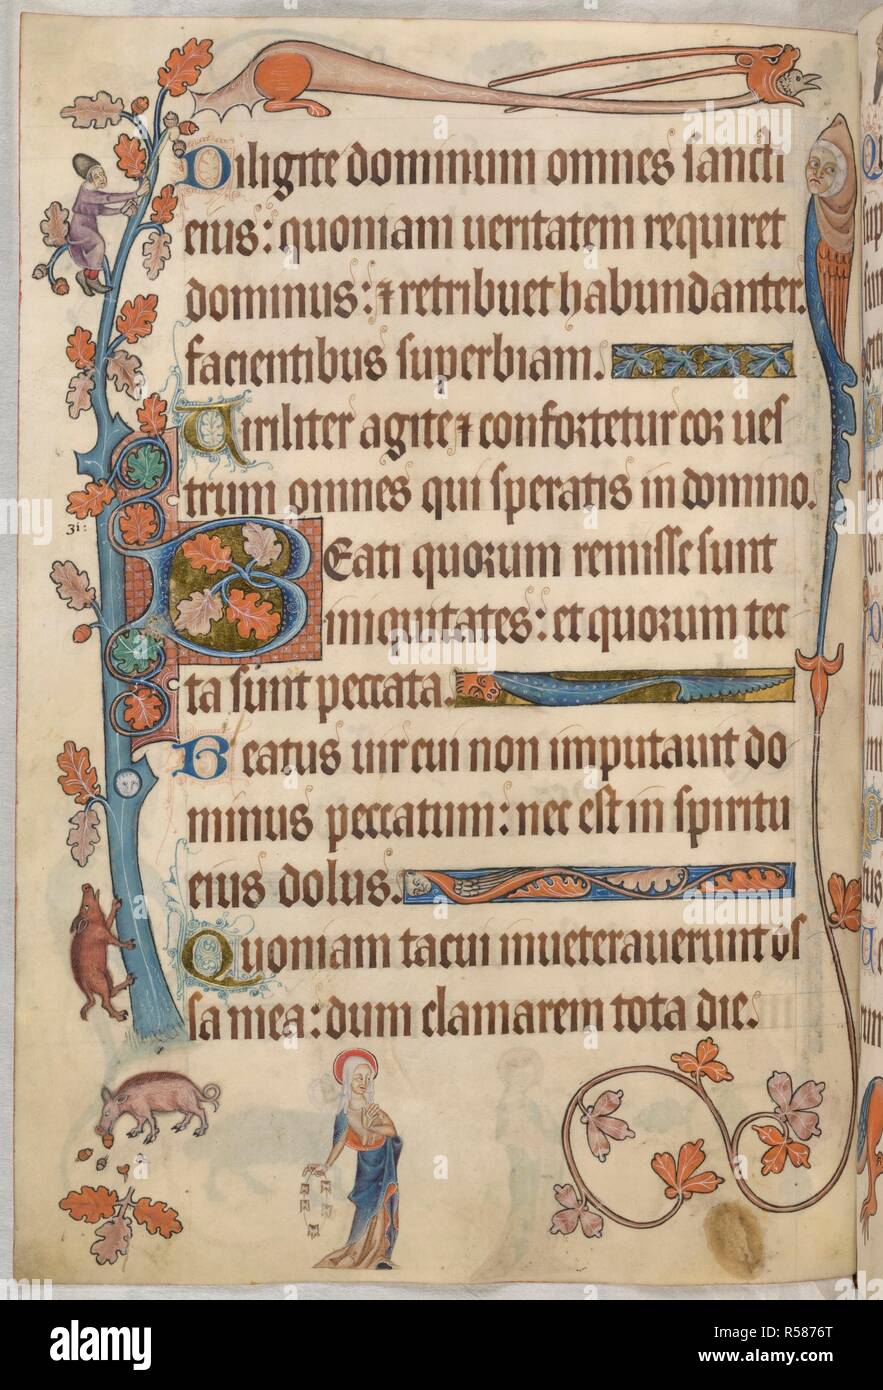 Psalm 31; hl. Apollonia. Luttrell Psalter. England [East Anglia]; ca. 1325-1335. [Ganze folio] Ende von Psalm 30. Psalm 31, beginnend mit der ersten 'B', verflochtene Eichenlaub, die Teil der Eiche, die schmückt den äußeren Rand. Ein Mann in ein Acorn-förmige hat klettert in den Filialen Eicheln für die Schweine unter Schütteln. In den oberen Rand, eine Groteske mit Maske - wie Gesicht und langen Hörner verschlingt ein Vogel; und darunter, ein weiteres mit Bird Körper, foliate Schwanz und menschlichen Kopf trägt einen Pelzbesatz Kapuze. Im Unterrand, St Apollonia hält einen String der Zähne wie ein Rosenkranz, ein REFEREN Stockfoto